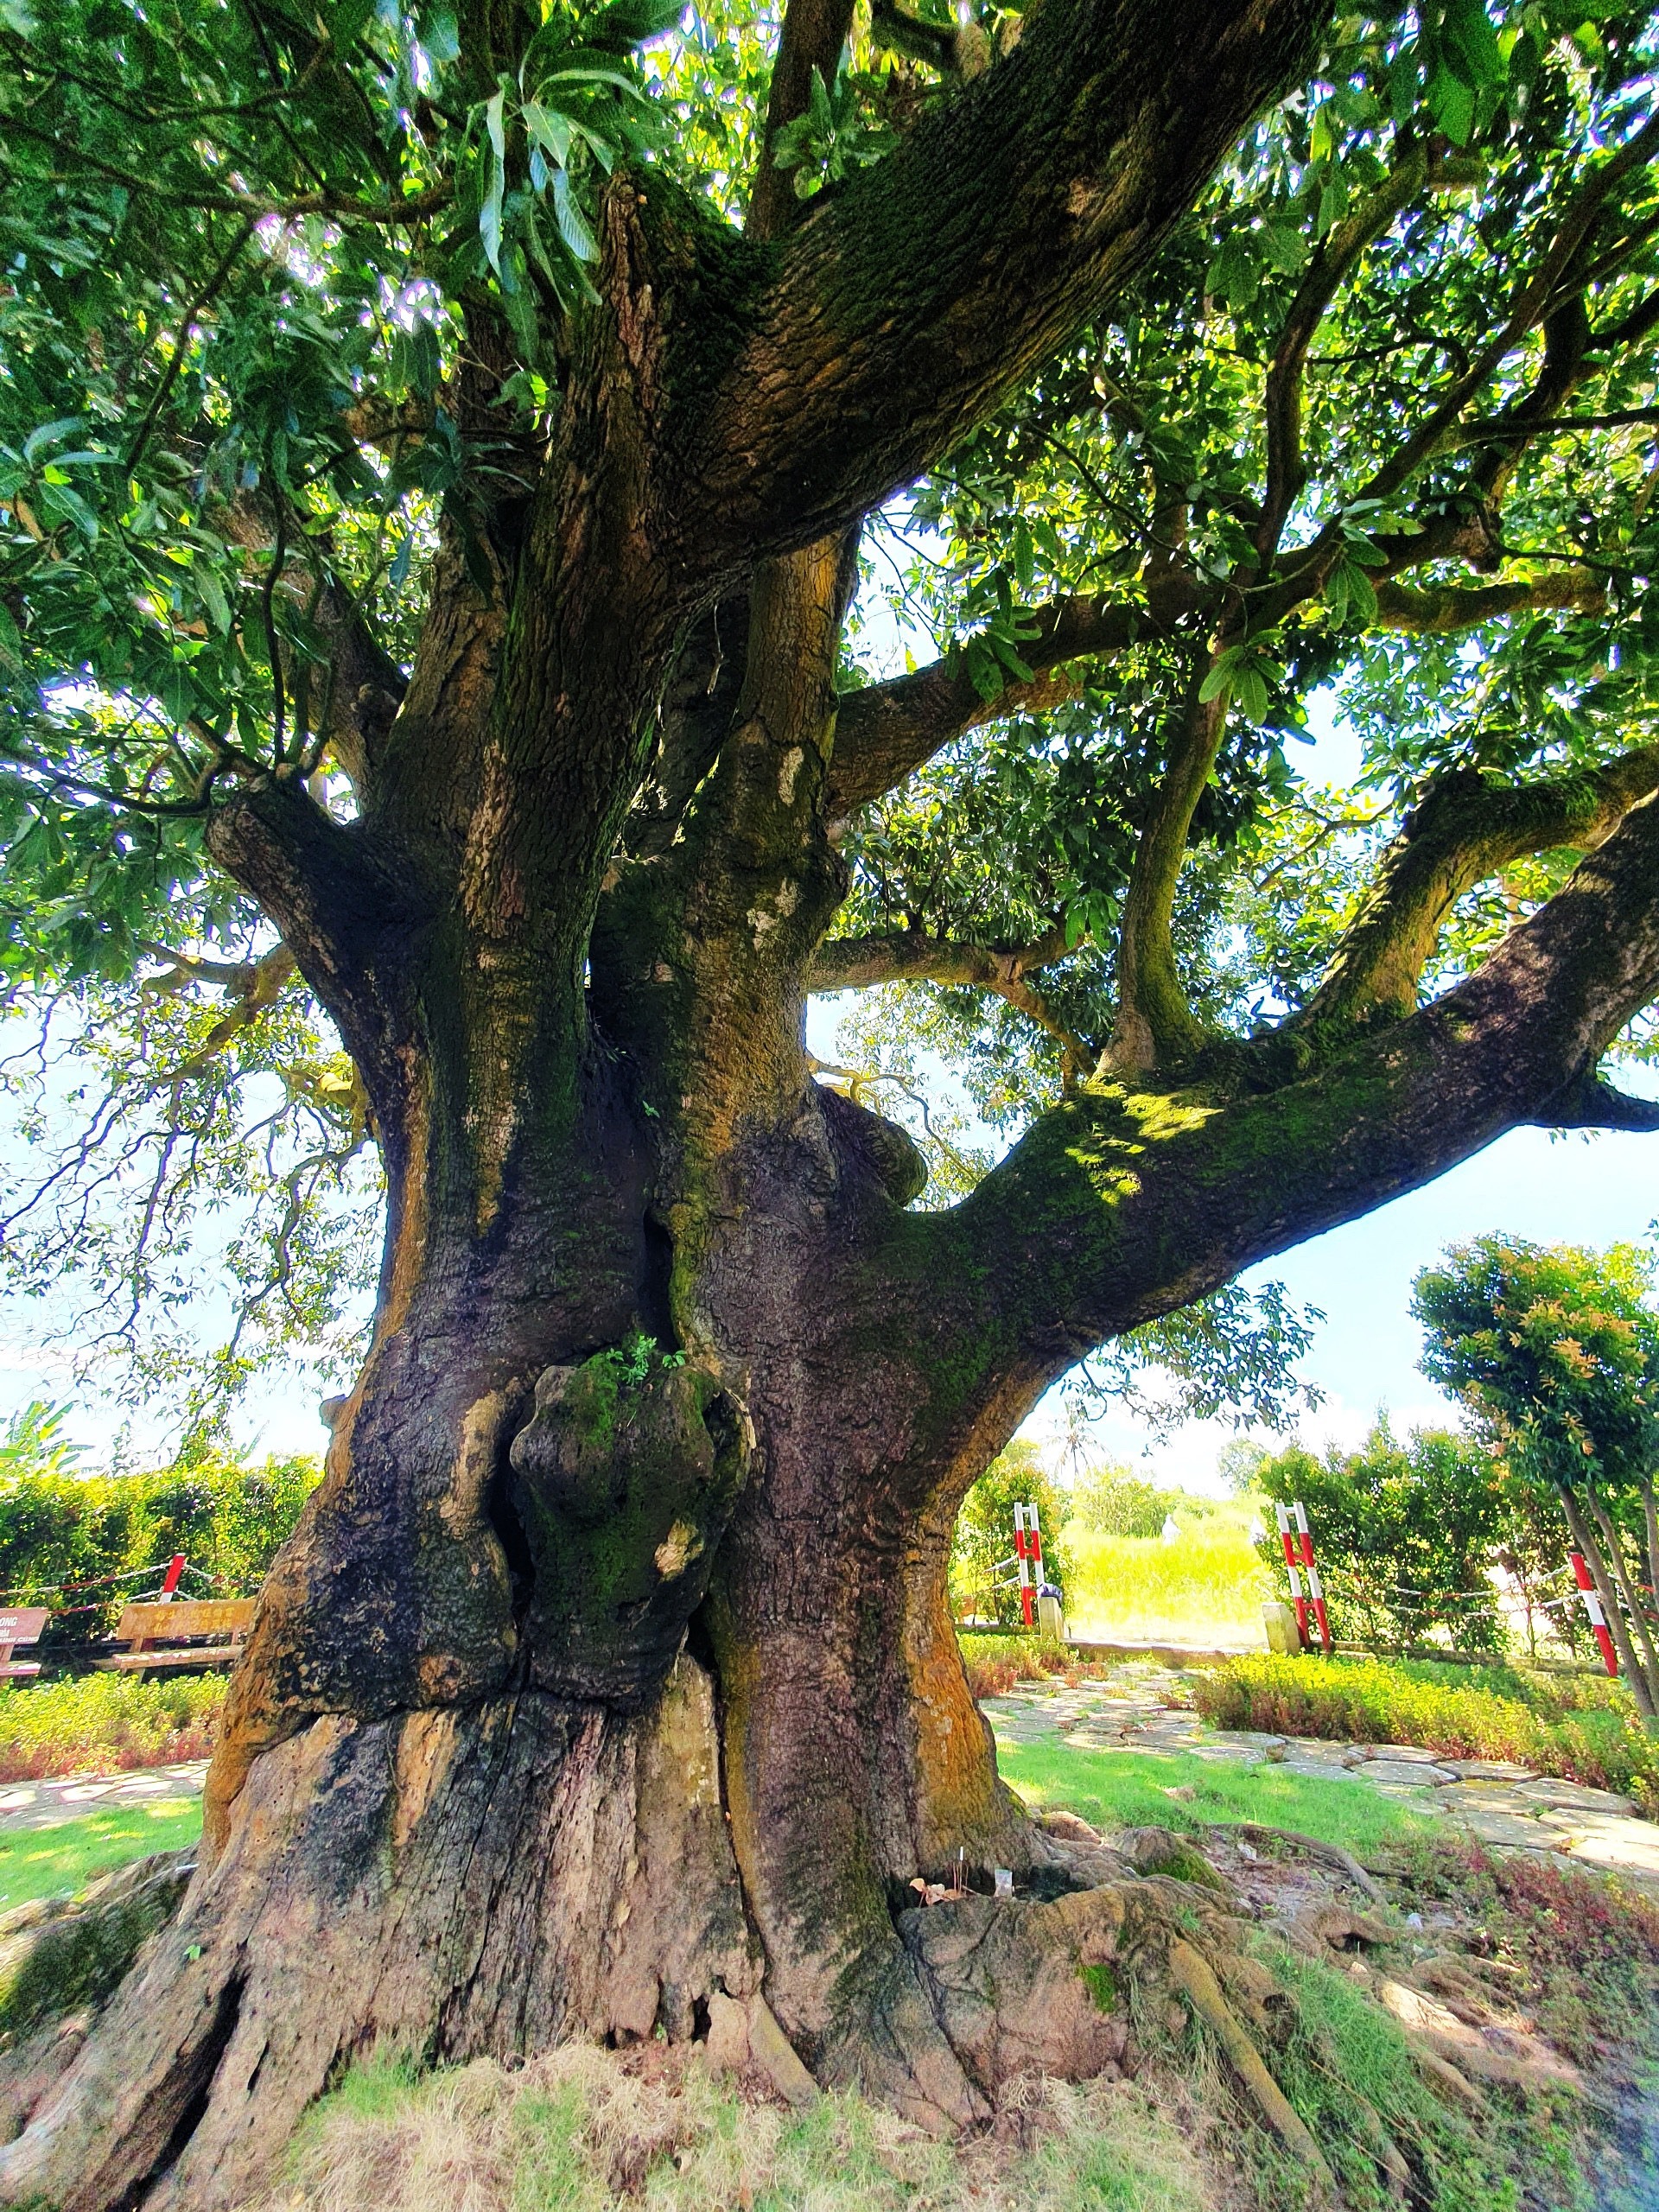 Ở Bạc Liêu có cây xoài cổ thụ hơn 340 năm tuổi lớn nhất vùng ĐBSCL vẫn sai trái, mỗi vụ thu hàng trăm kg - Ảnh 4.